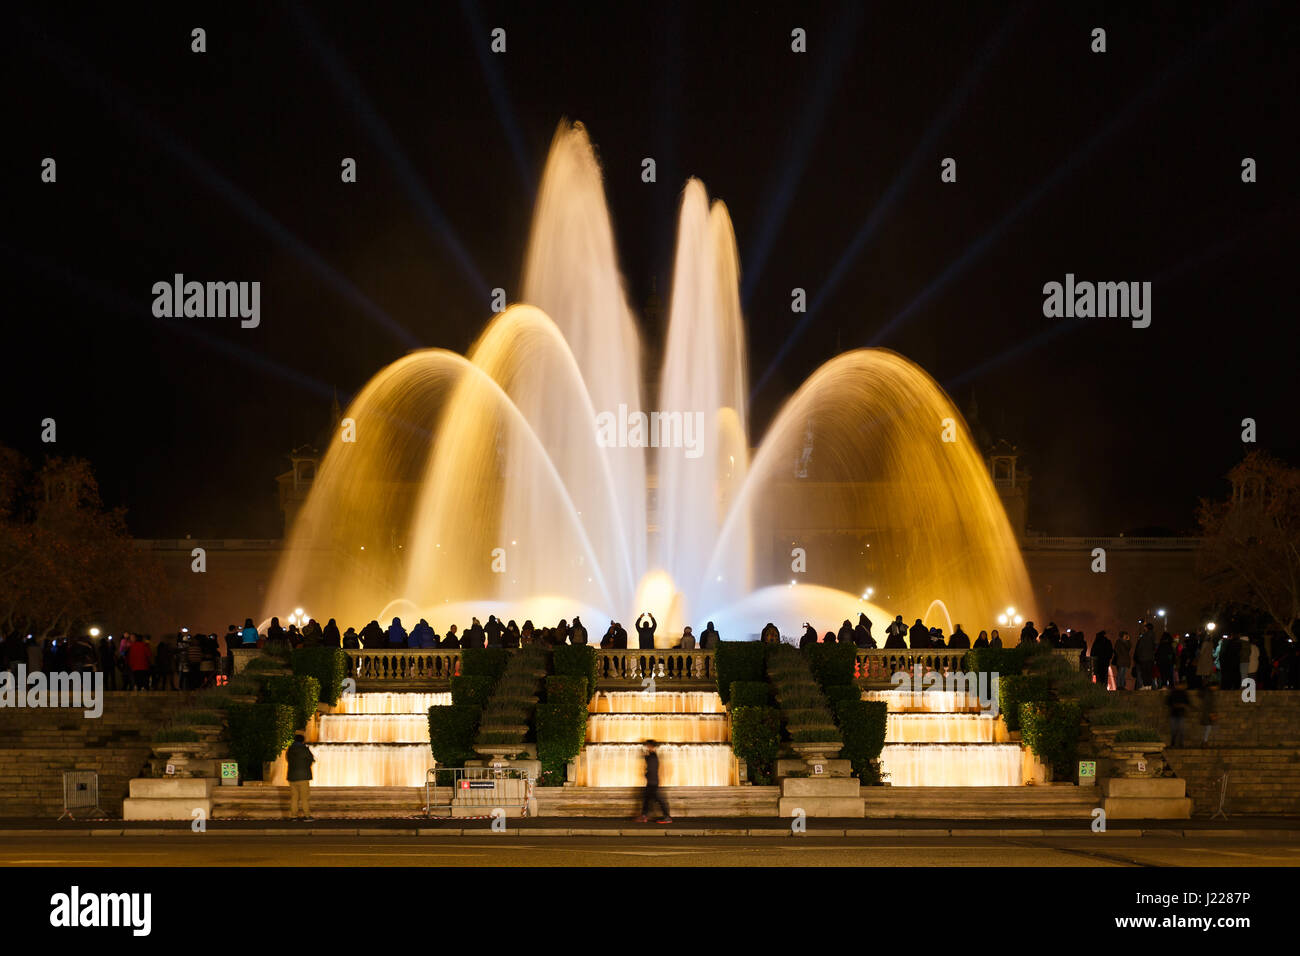 Grand groupe de personnes regarde la fontaine musicale de Montjuic, près du Musée National d'Art de Catalogne dans la nuit Banque D'Images